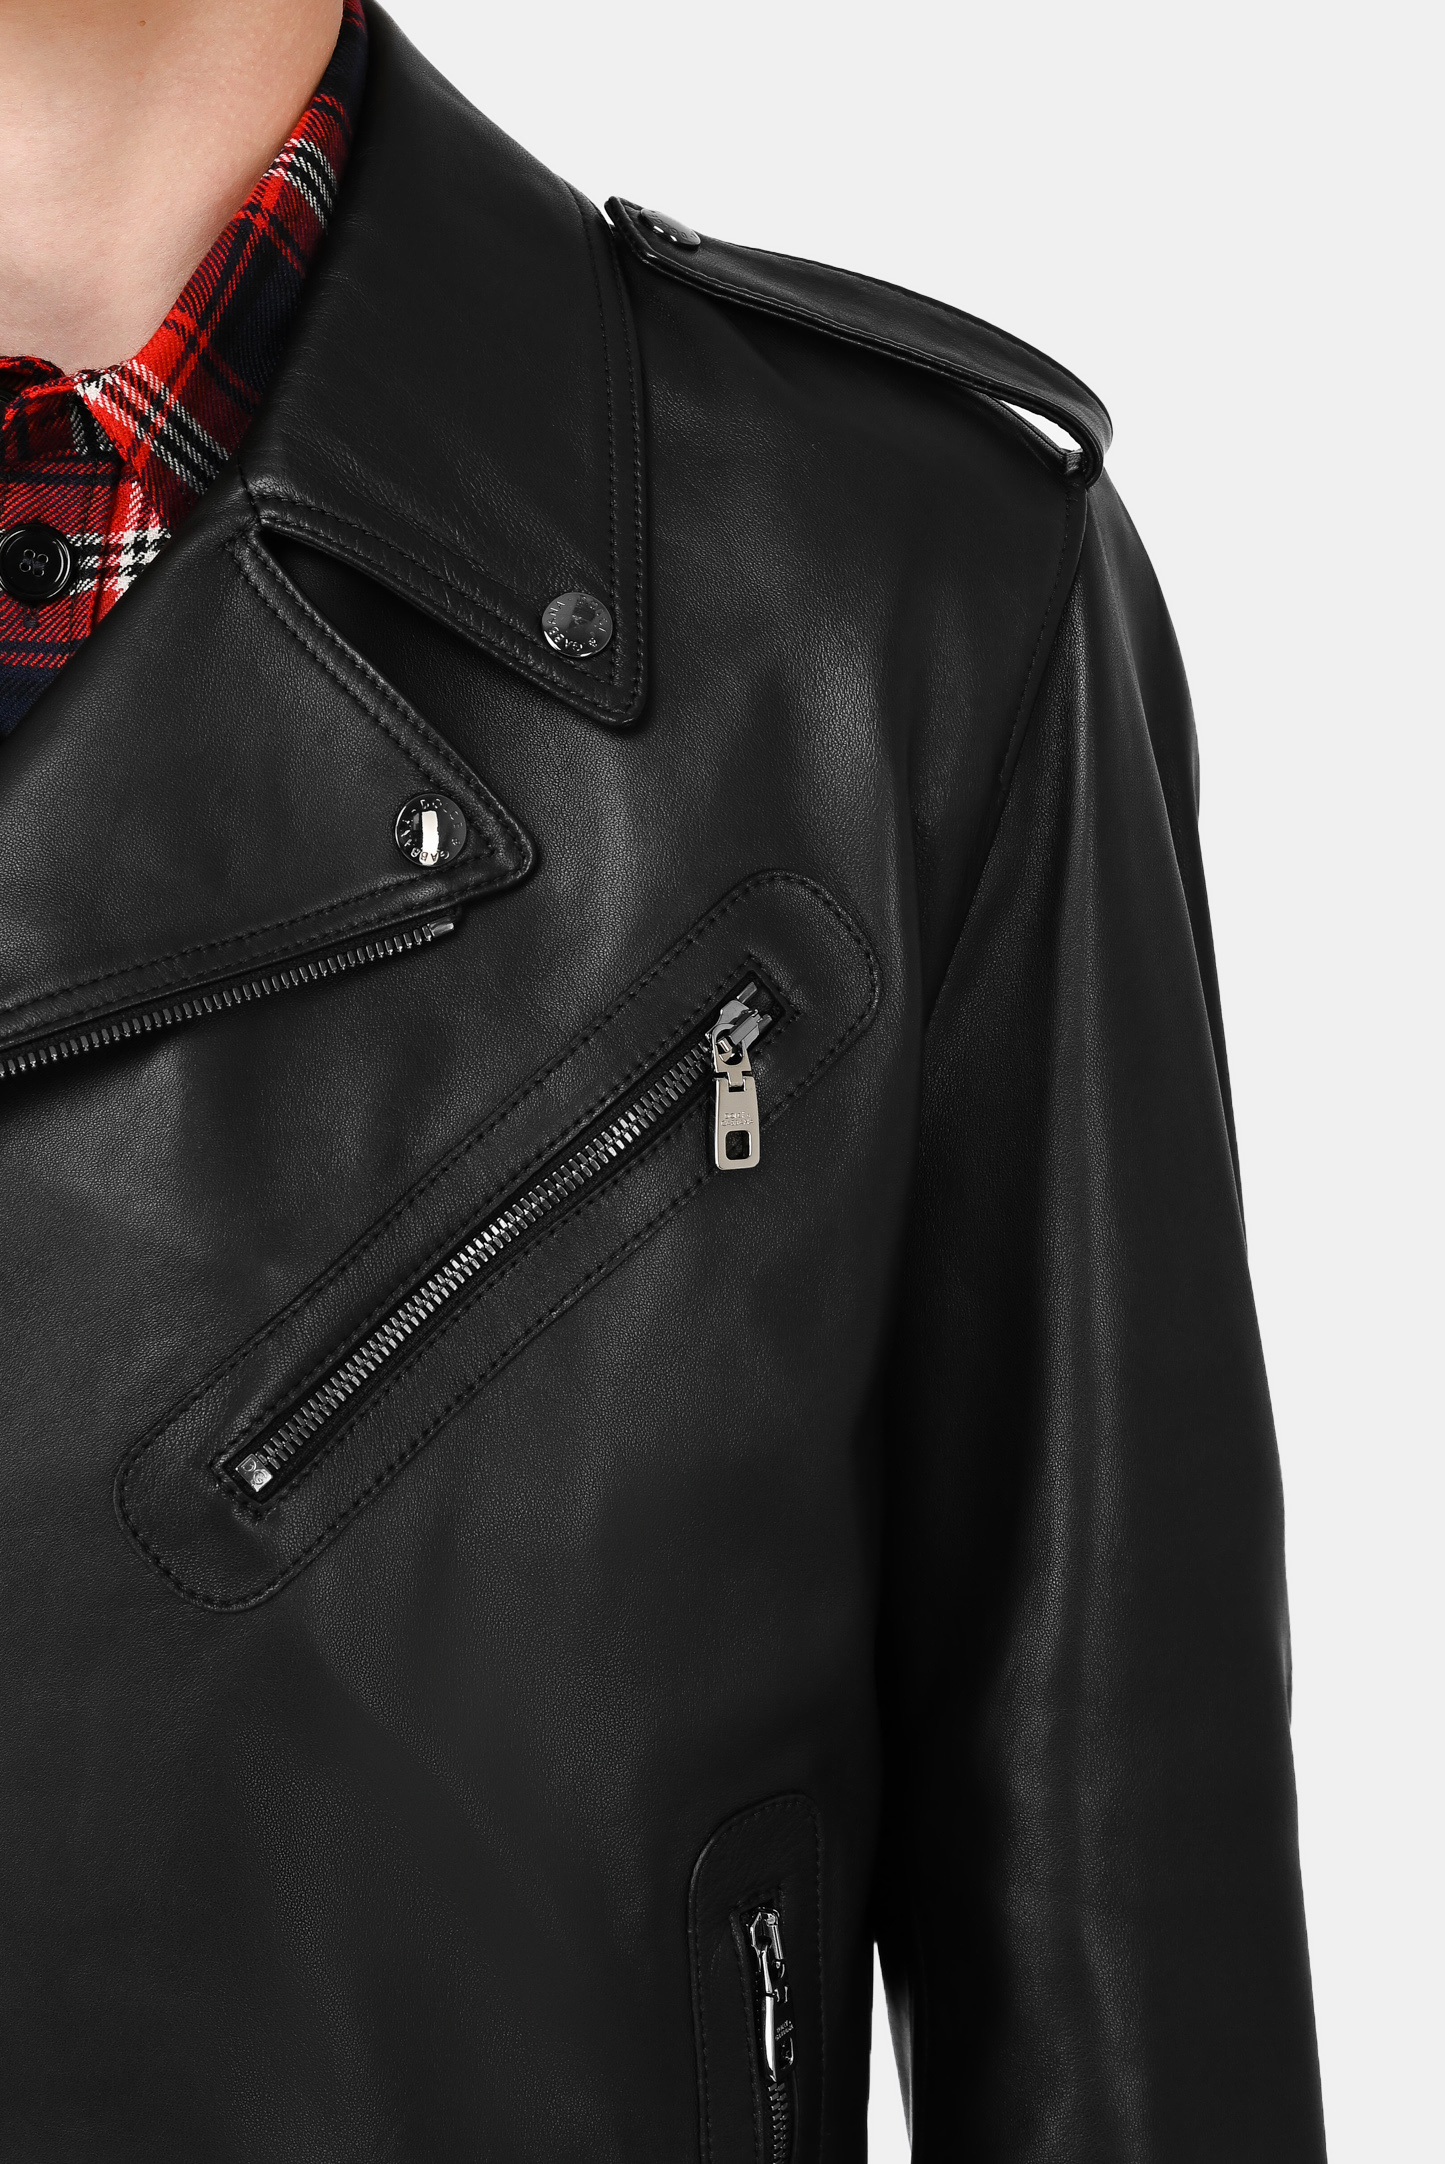 Куртка DOLCE & GABBANA G9UB1L GEU47, цвет: Черный, Мужской